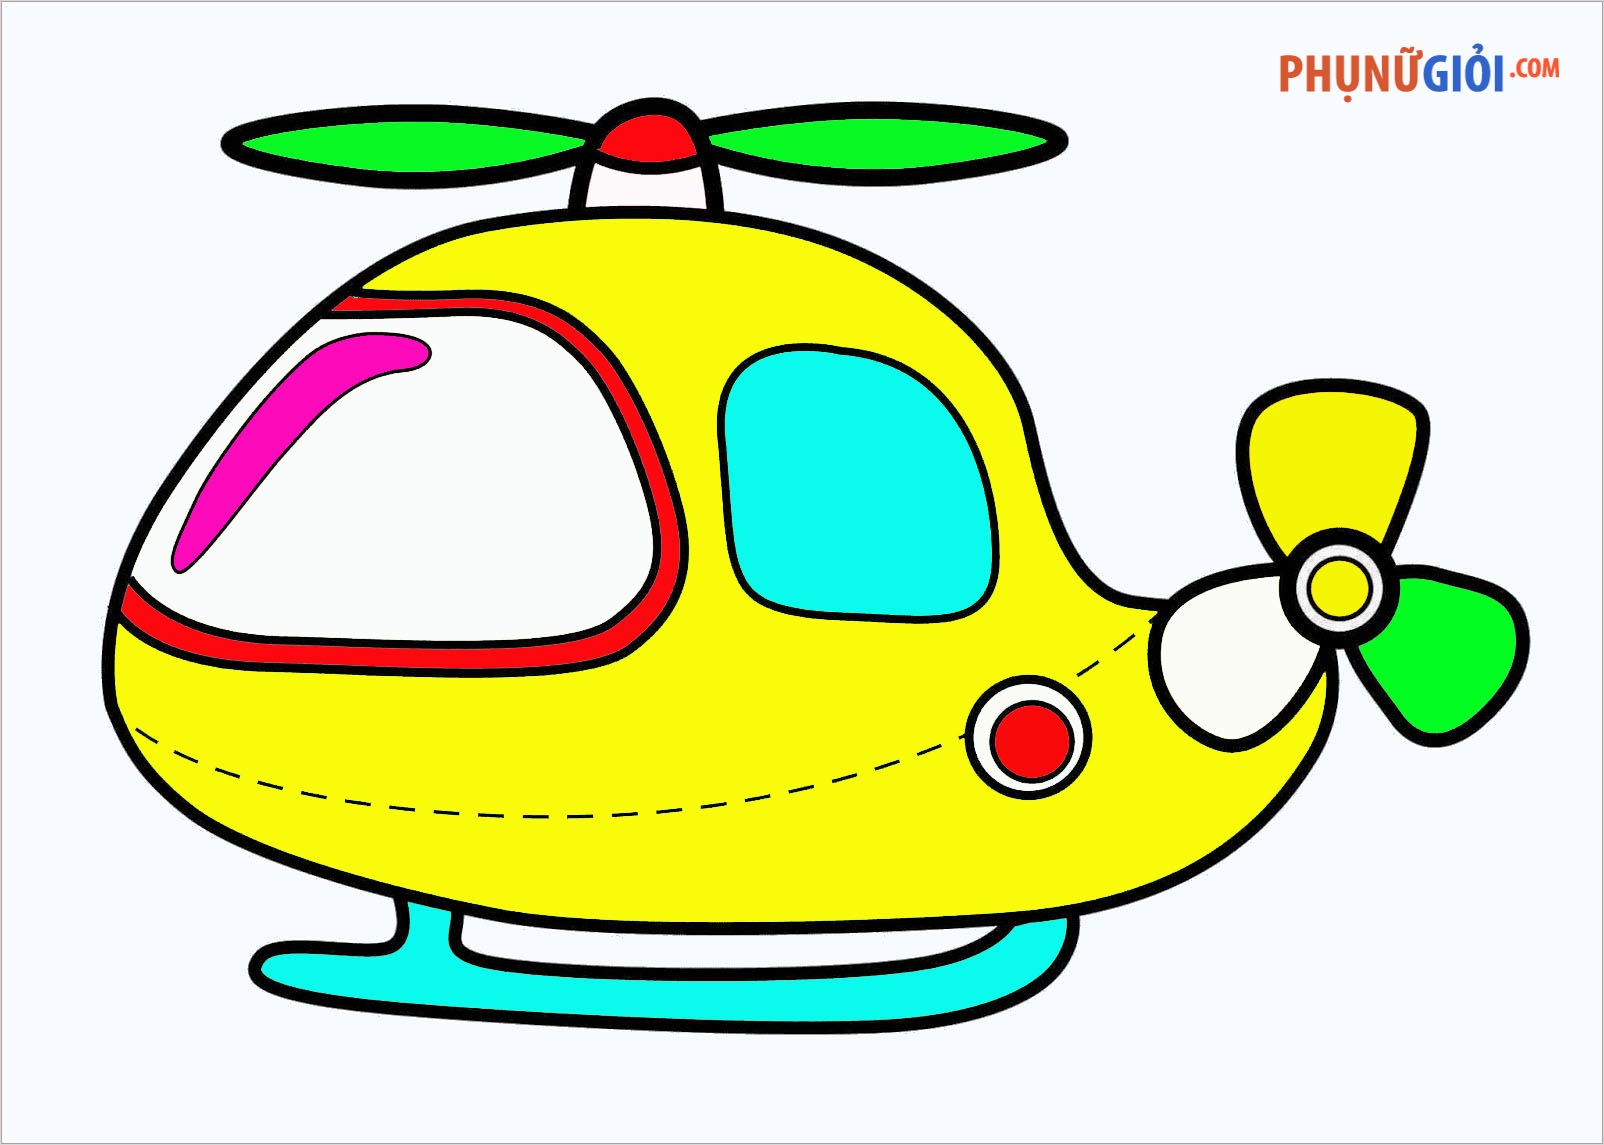 Cong ty Cong Nghe Tin hoc Nha truong  VietGames  BÉ HỌA SĨ  Dạy vẽ máy  bay trực thăng